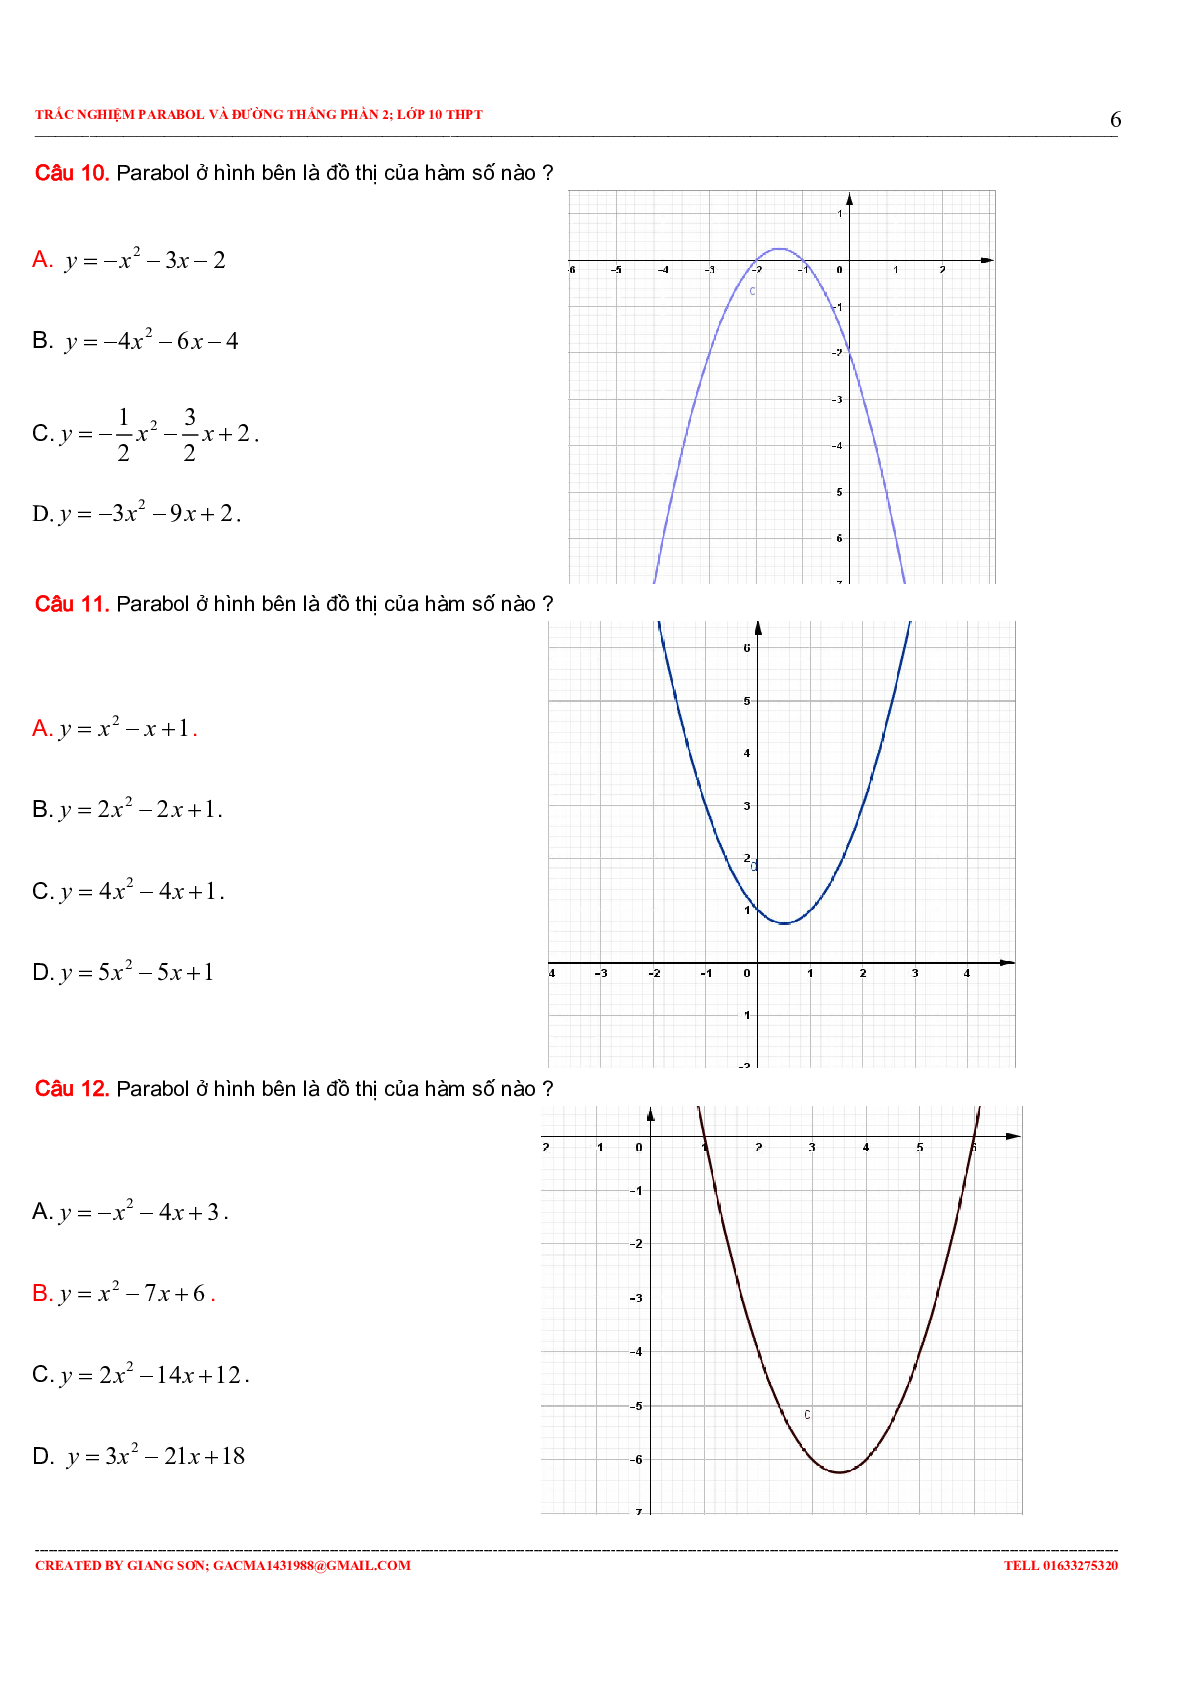 97 Bài tập trắc nghiệm Parabol và đường thẳng phần 2 (trang 6)